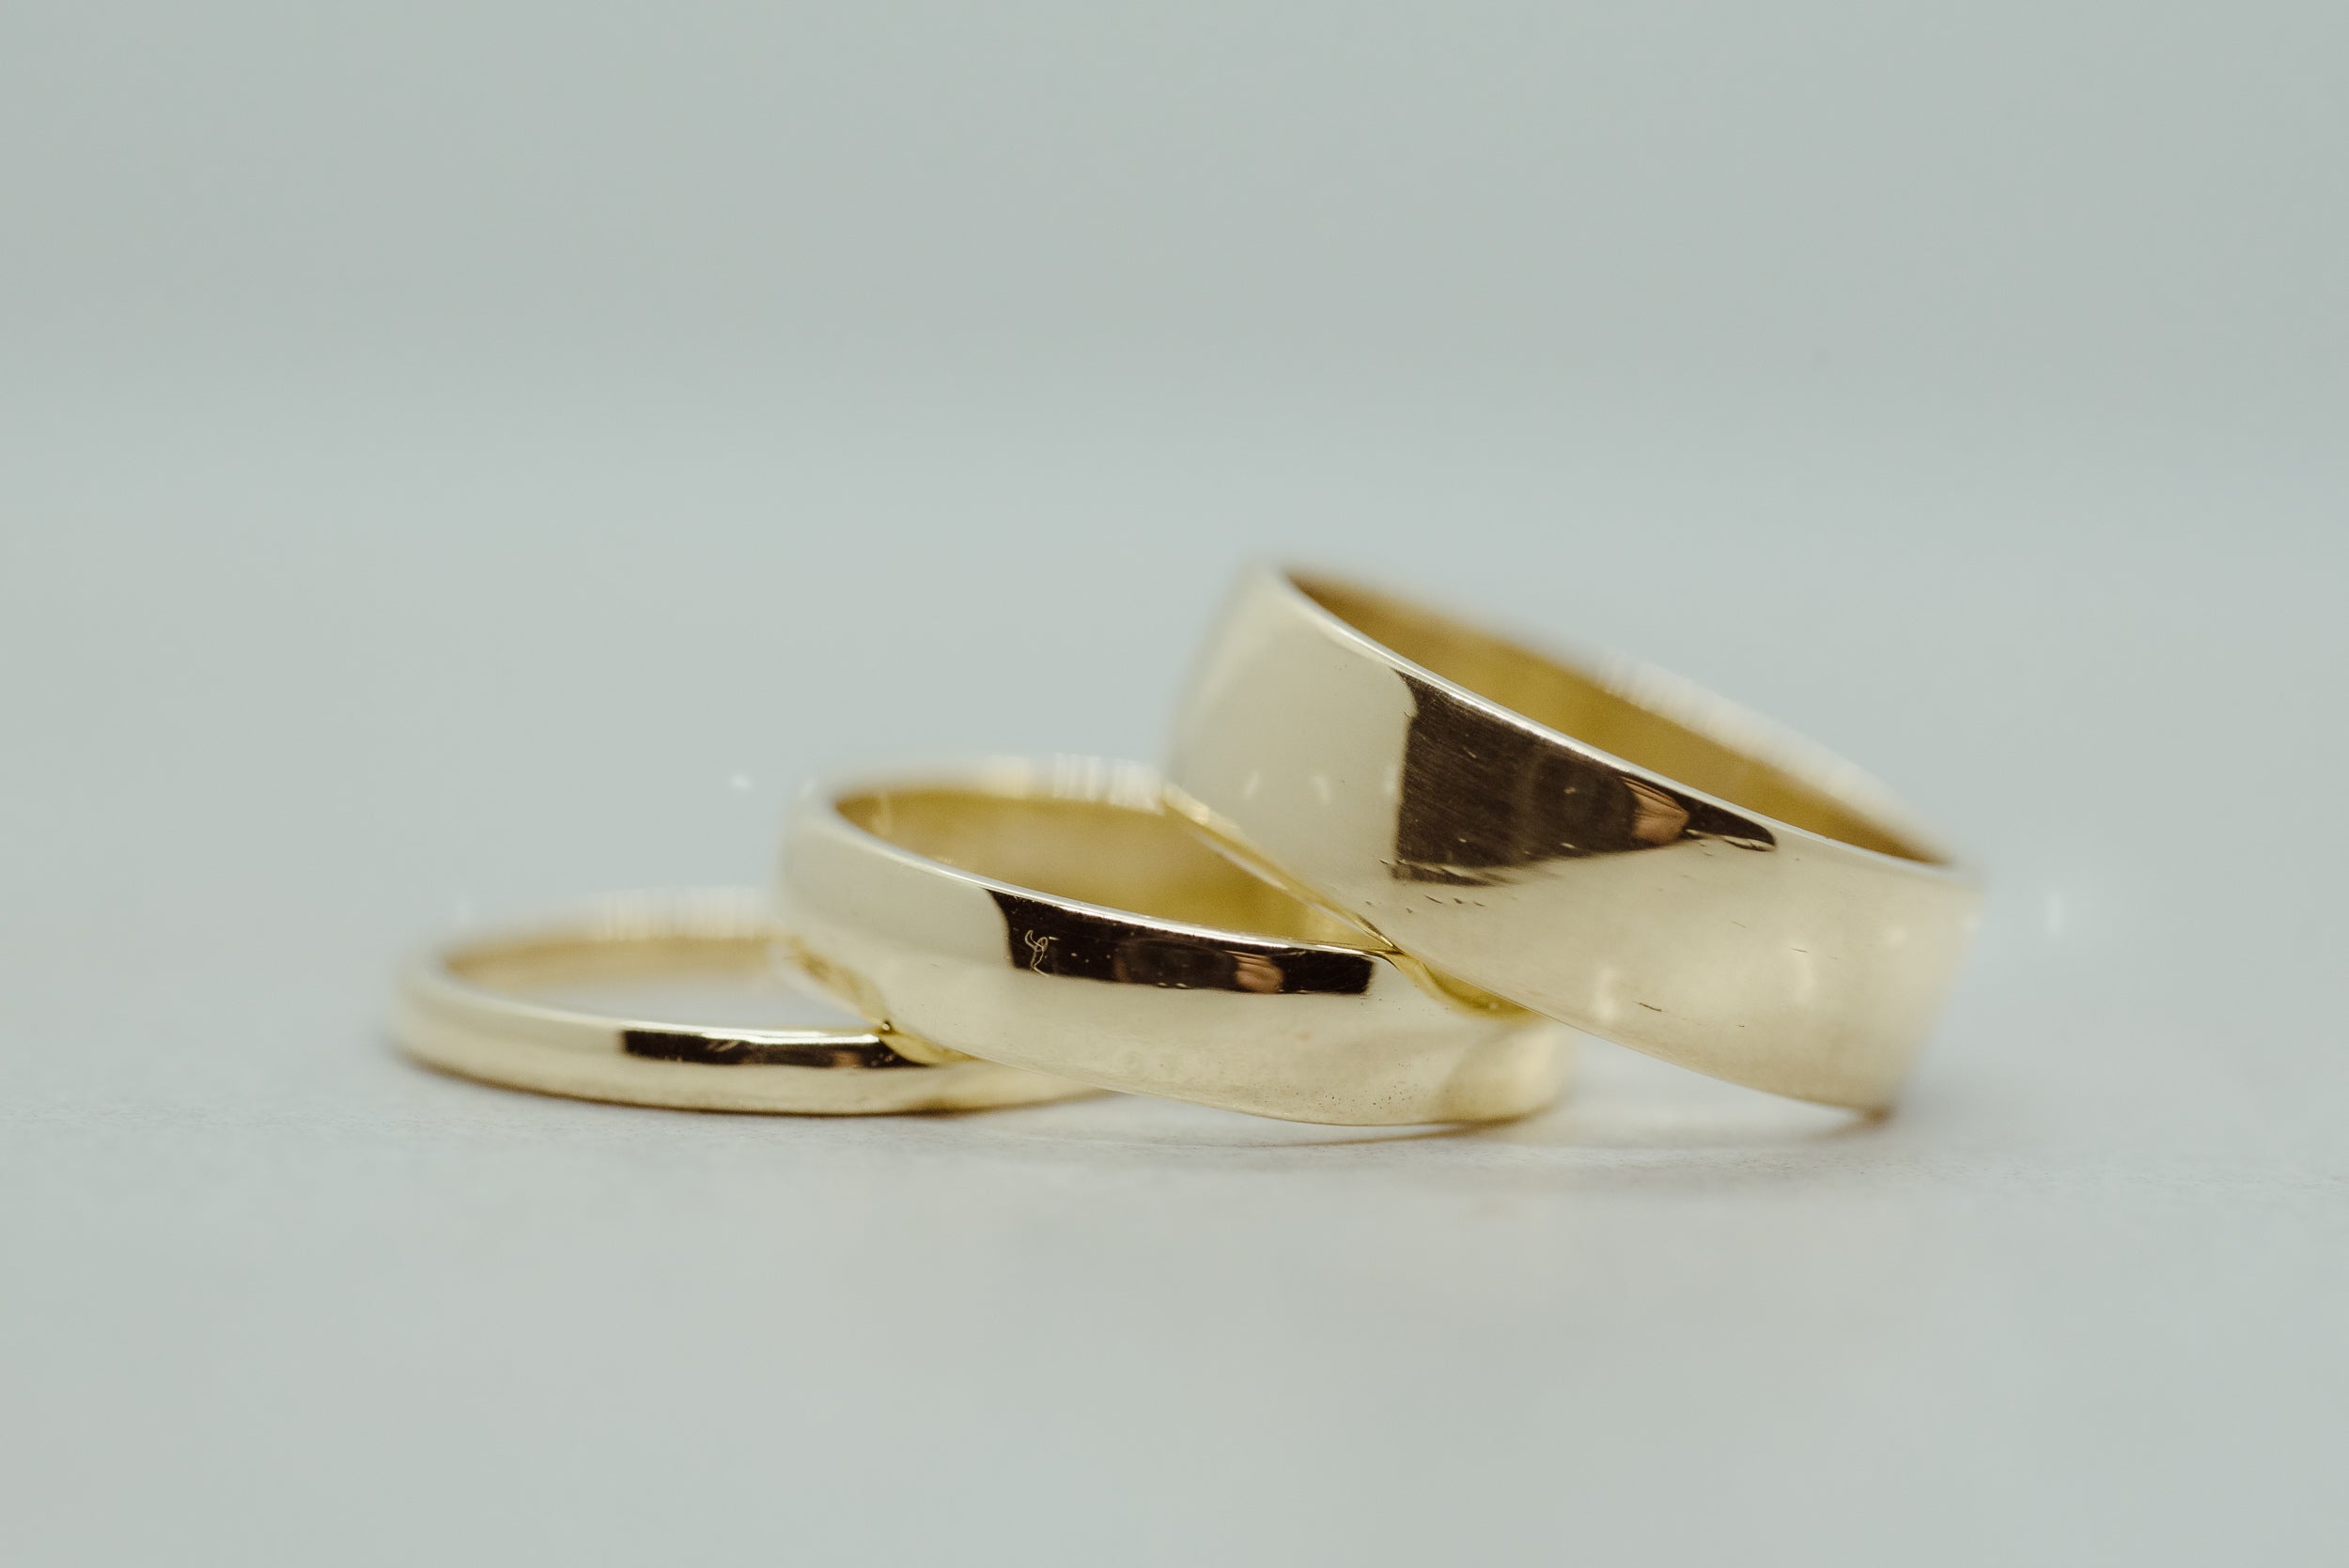 Classic Wedding Band 4mm - Lelya - bespoke engagement and wedding rings made in Scotland, UK